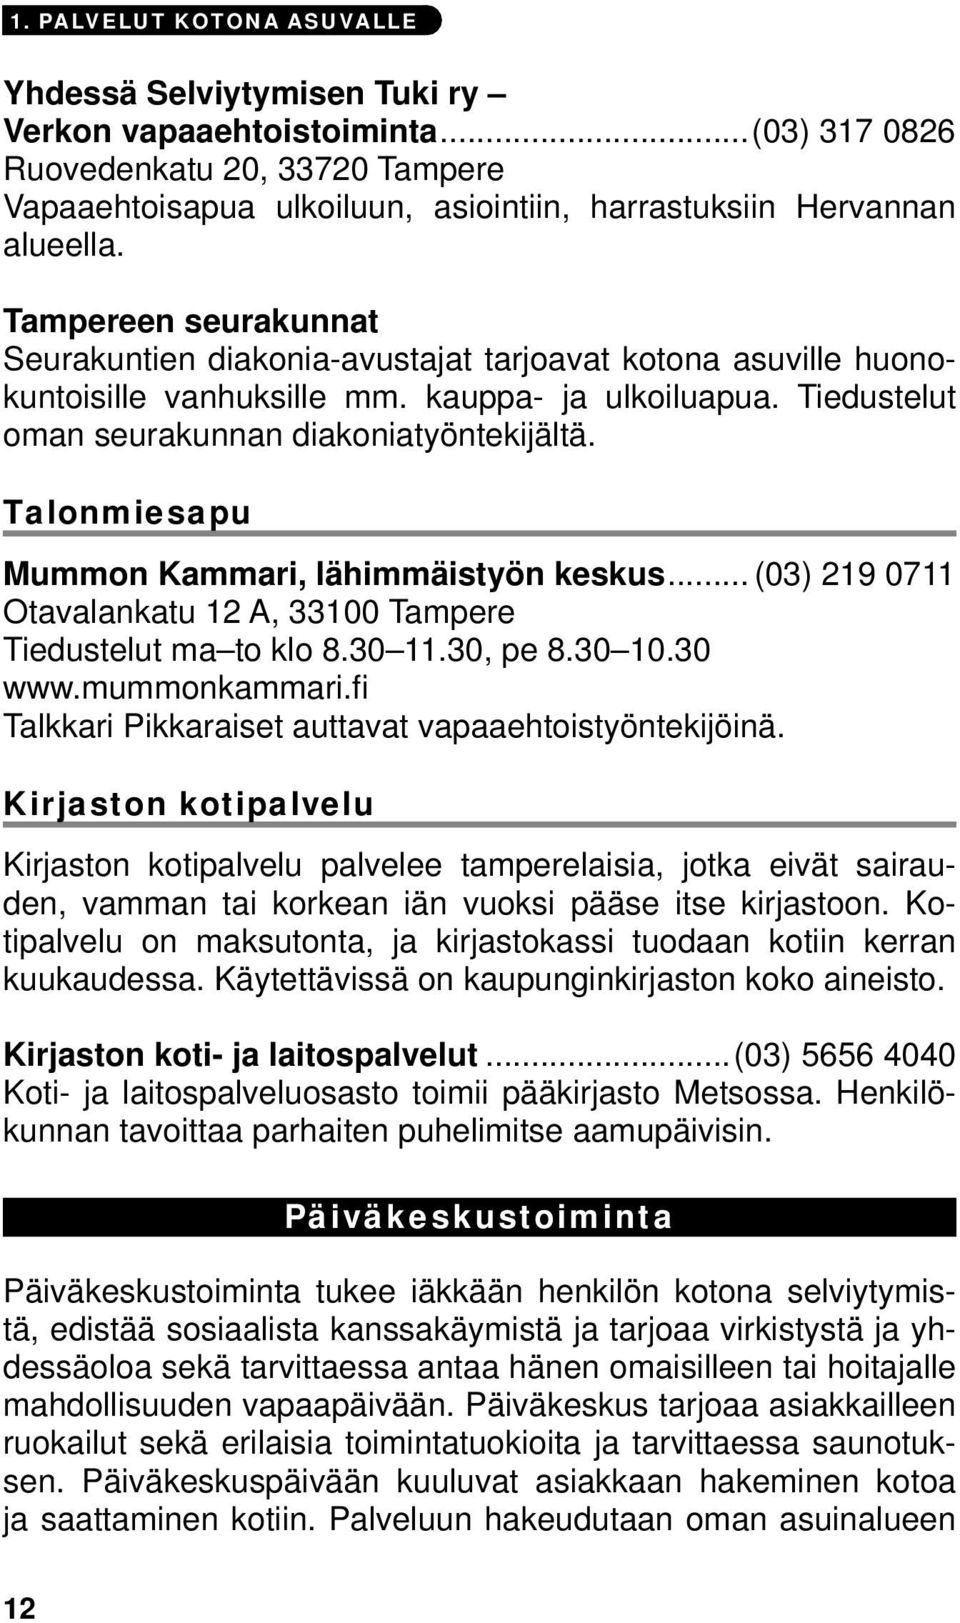 Tampereen seurakunnat Seurakuntien diakonia-avustajat tarjoavat kotona asuville huonokuntoisille vanhuksille mm. kauppa- ja ulkoiluapua. Tiedustelut oman seurakunnan diakoniatyöntekijältä.